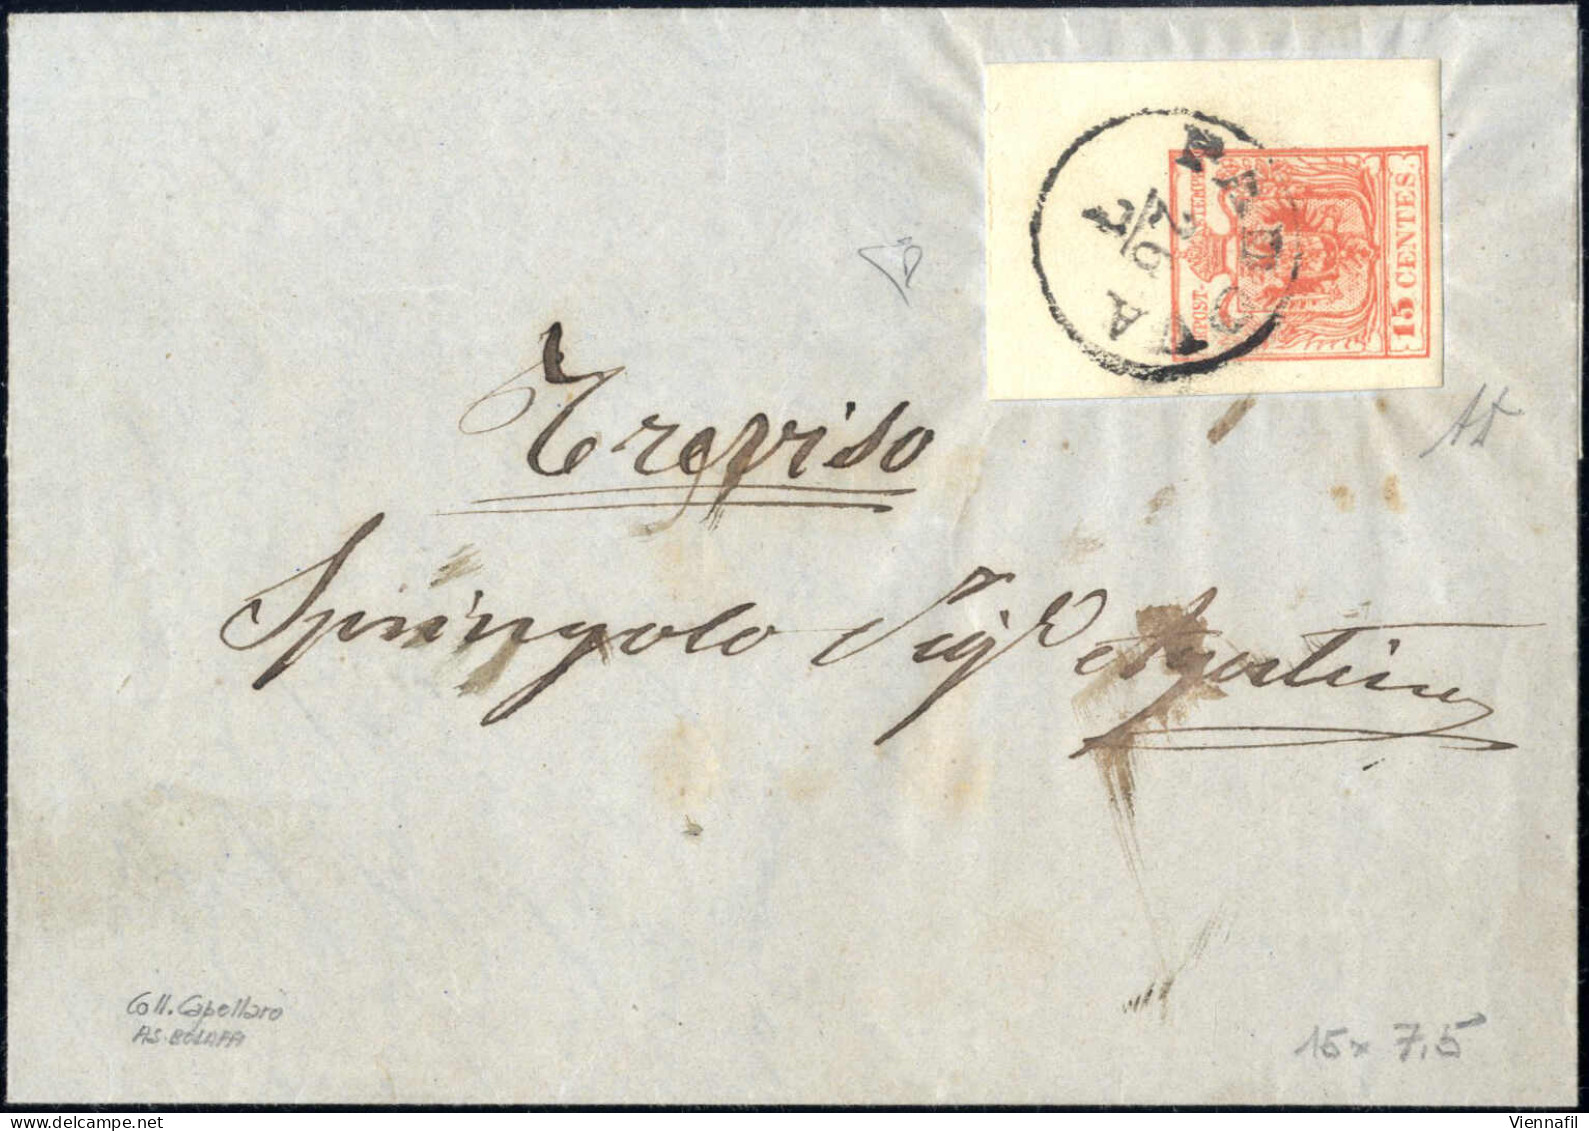 Cover 1854, Lettera Da Padova Del 26.7 Per Treviso Affrancata Con 15 C. Rosa Vermiglio III Tipo Carta A Macchina, Angolo - Lombardy-Venetia